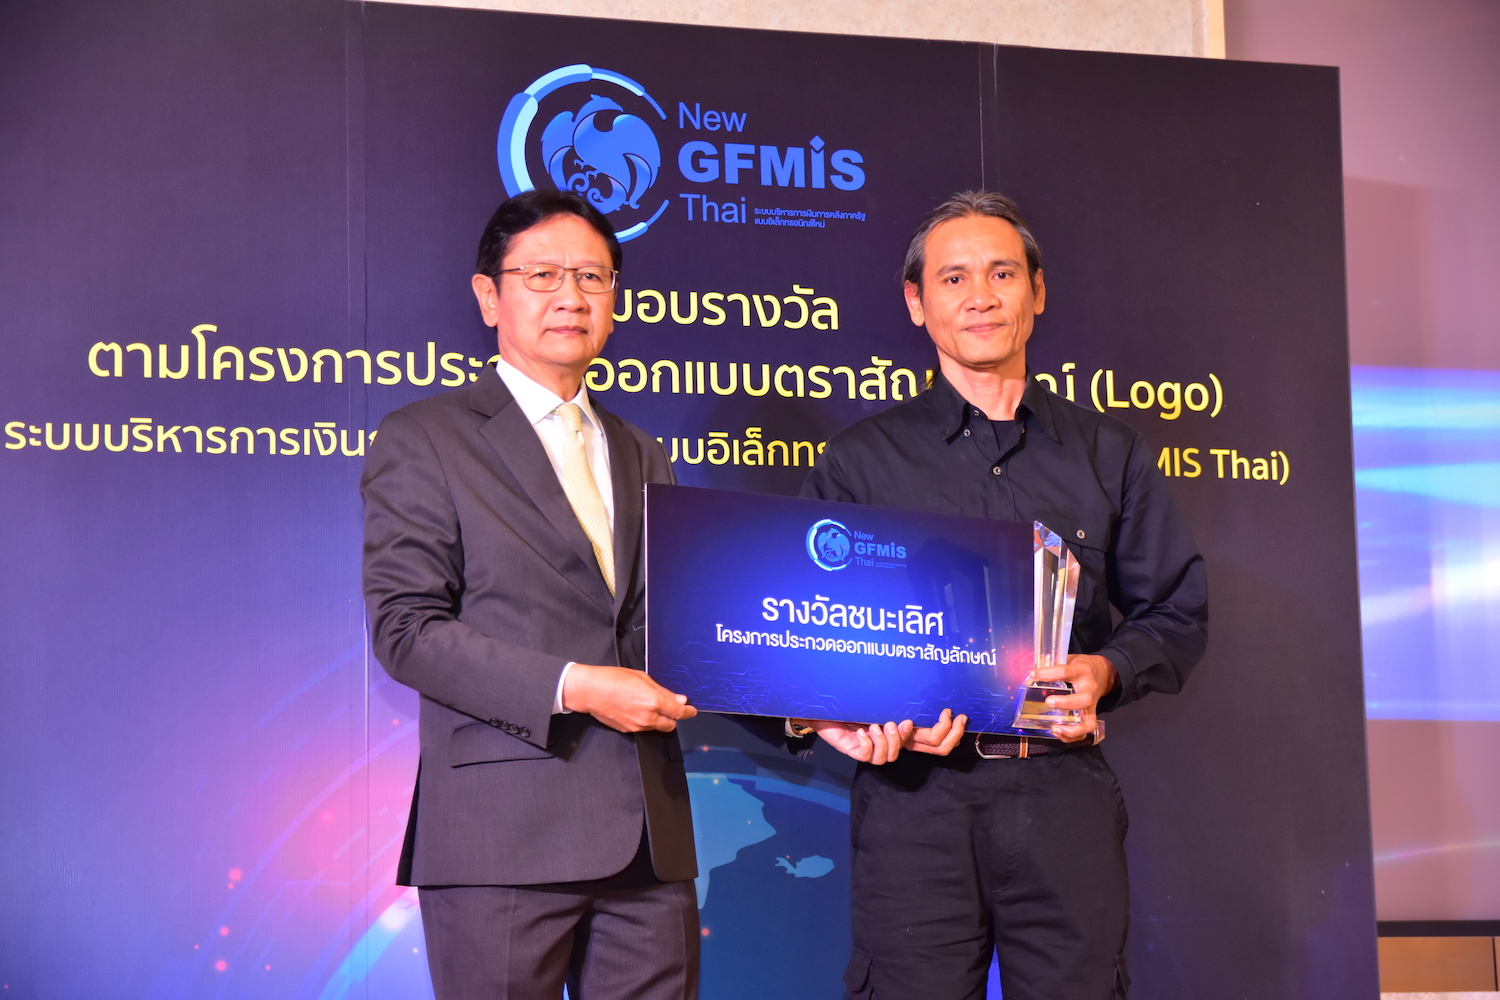 พิธีมอบรางวัลผู้ชนะการประกวดออกแบบโลโก้ โครงการ New GFMIS Thai